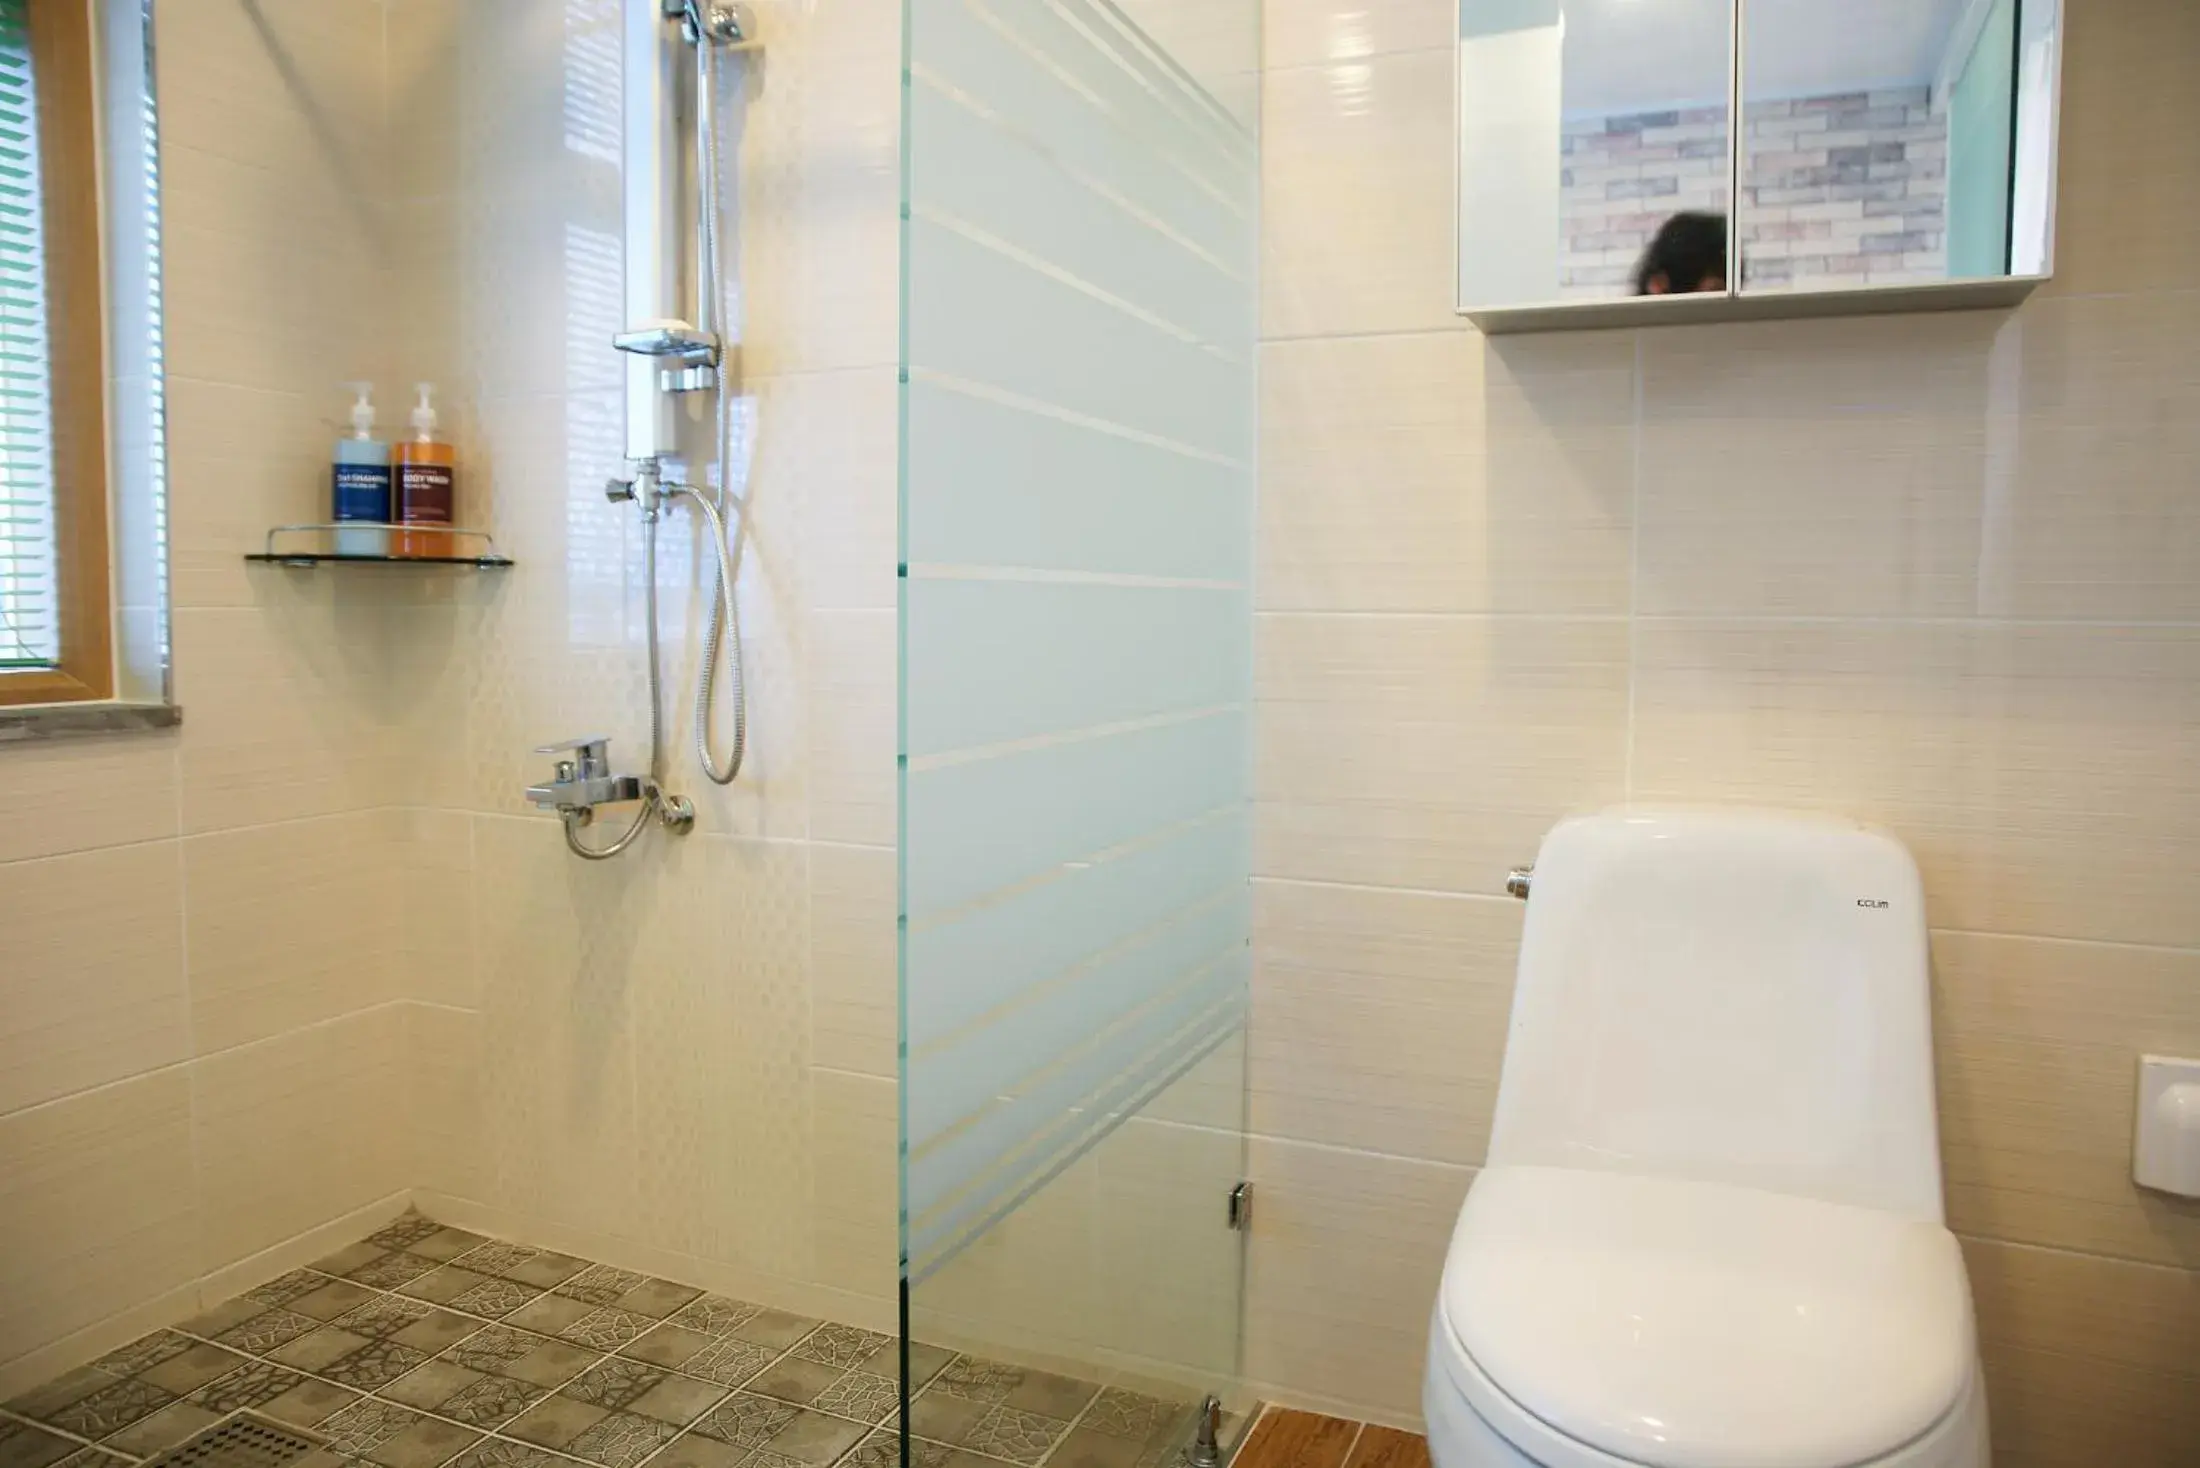 Shower, Bathroom in Oceantree House